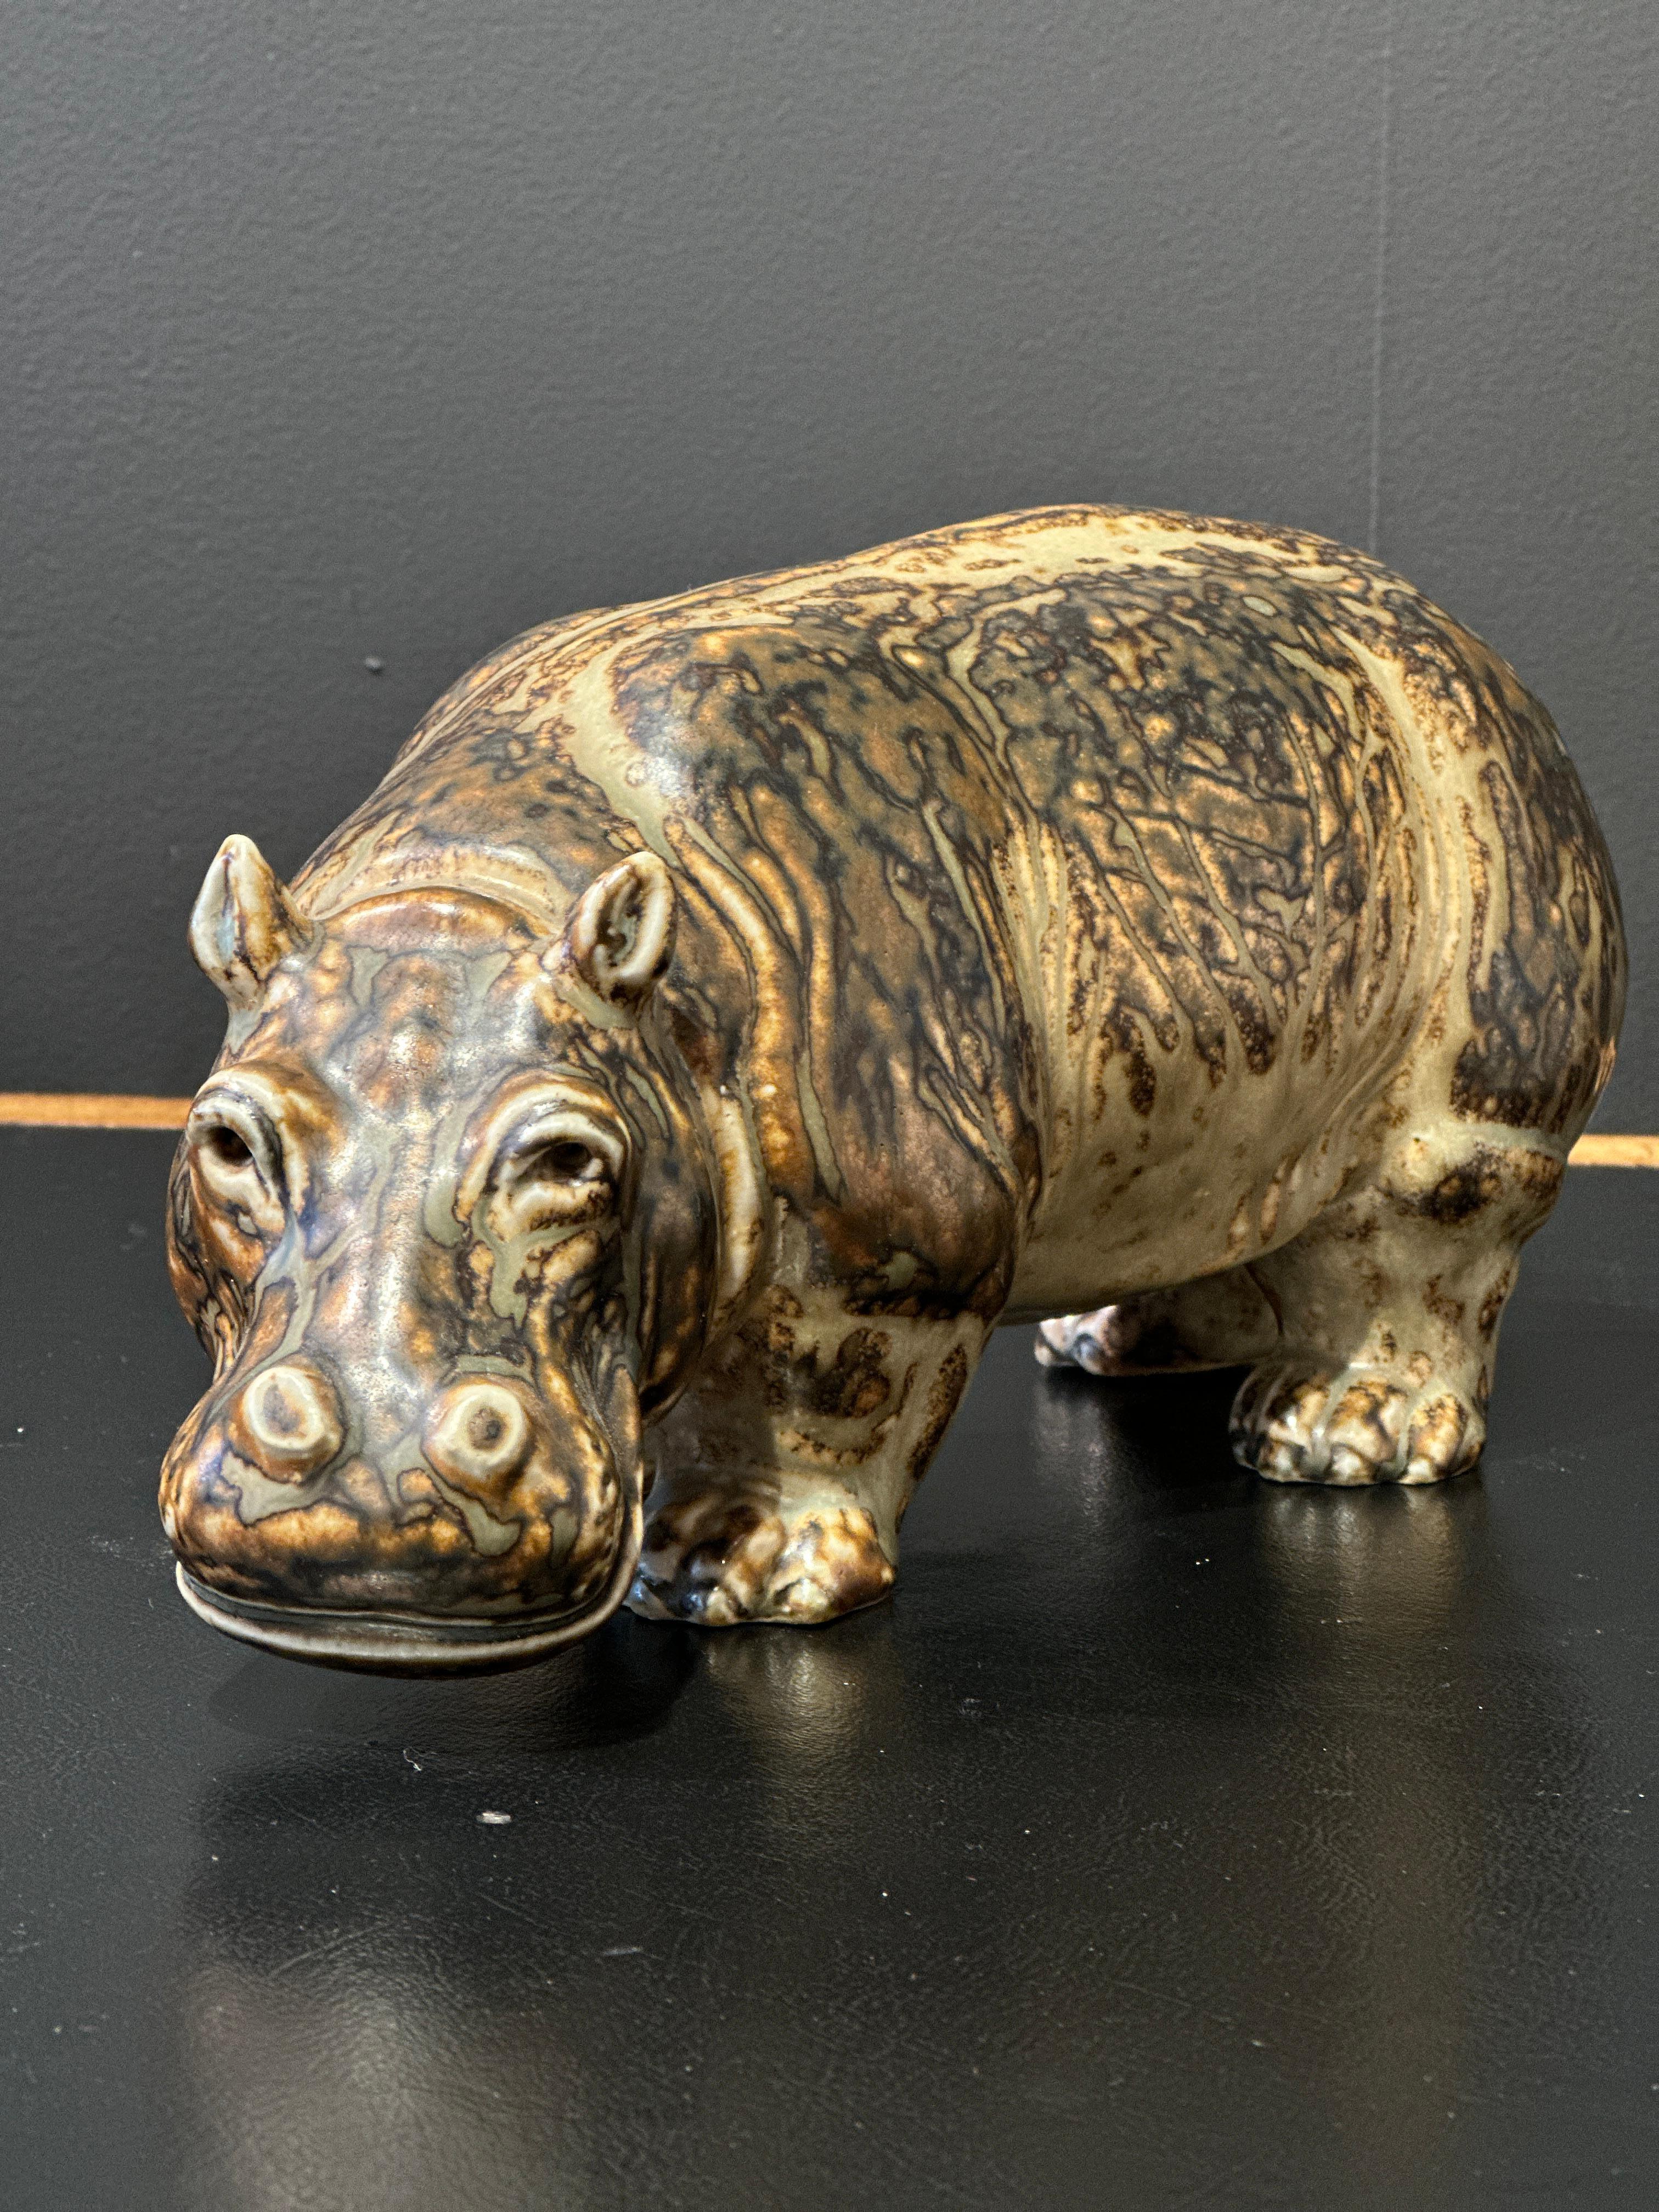 Hippopotame du céramiste Danois KNUD KYHN en grés
Très belle figurine animalière exécuté avec beaucoup de savoir faire.